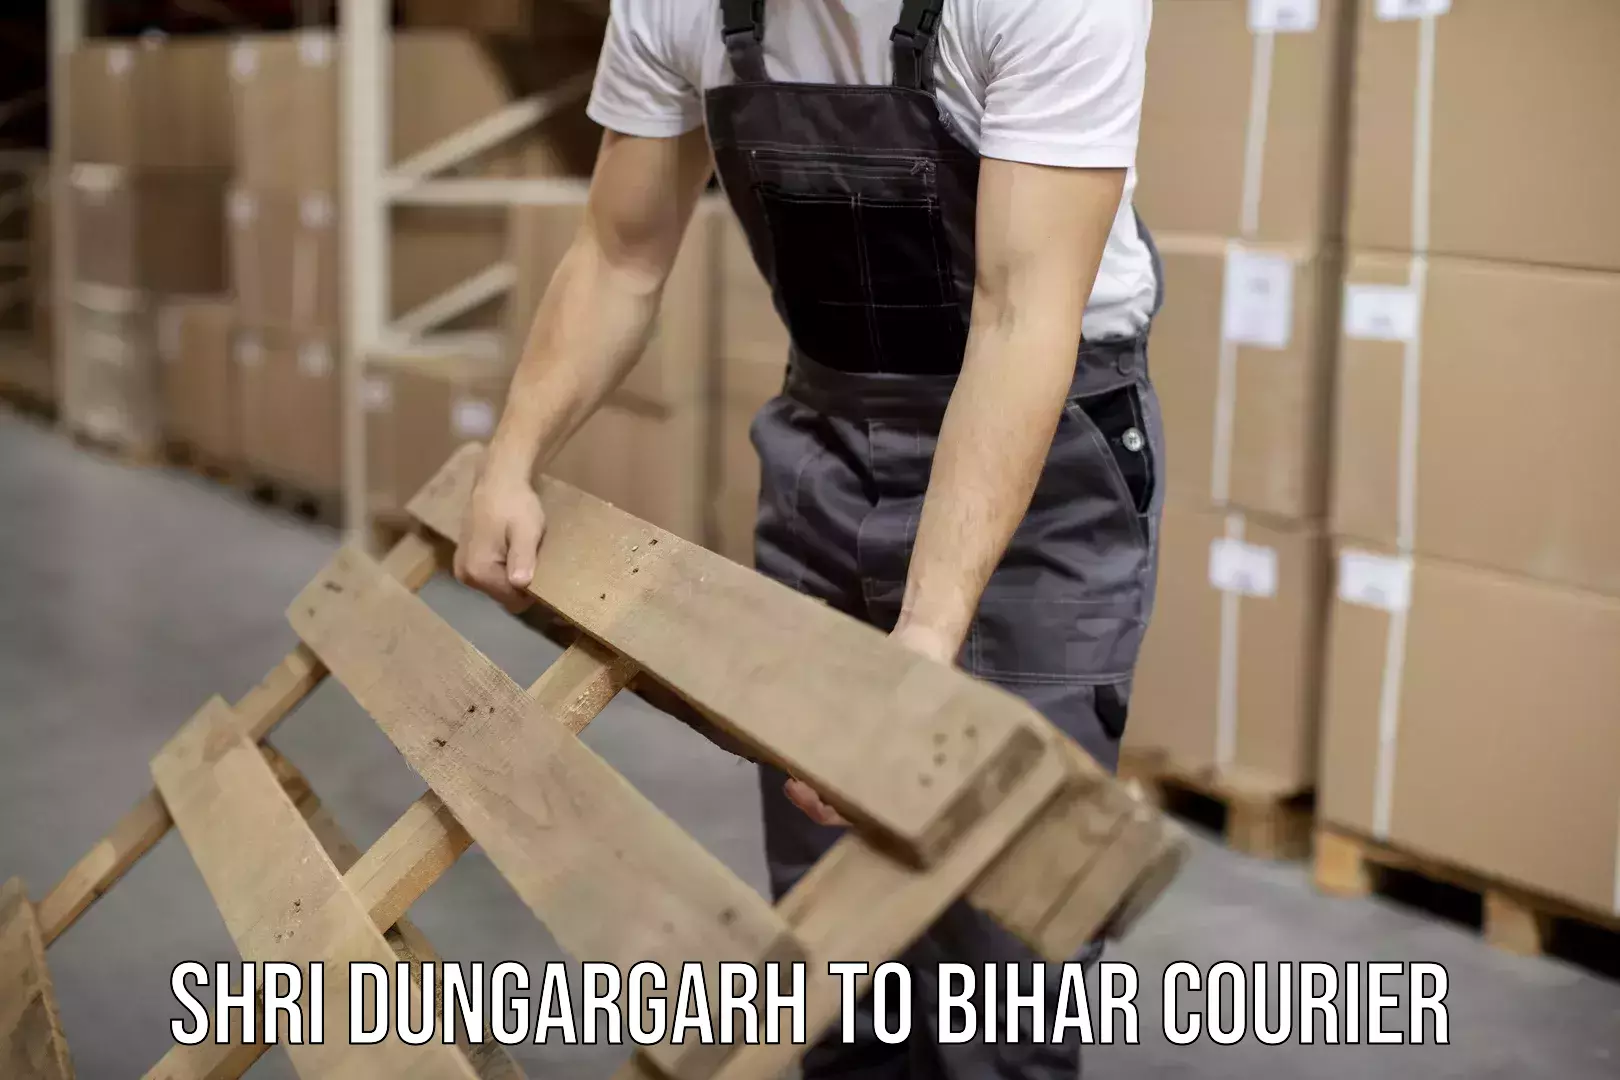 Full-service courier options Shri Dungargarh to Kochas